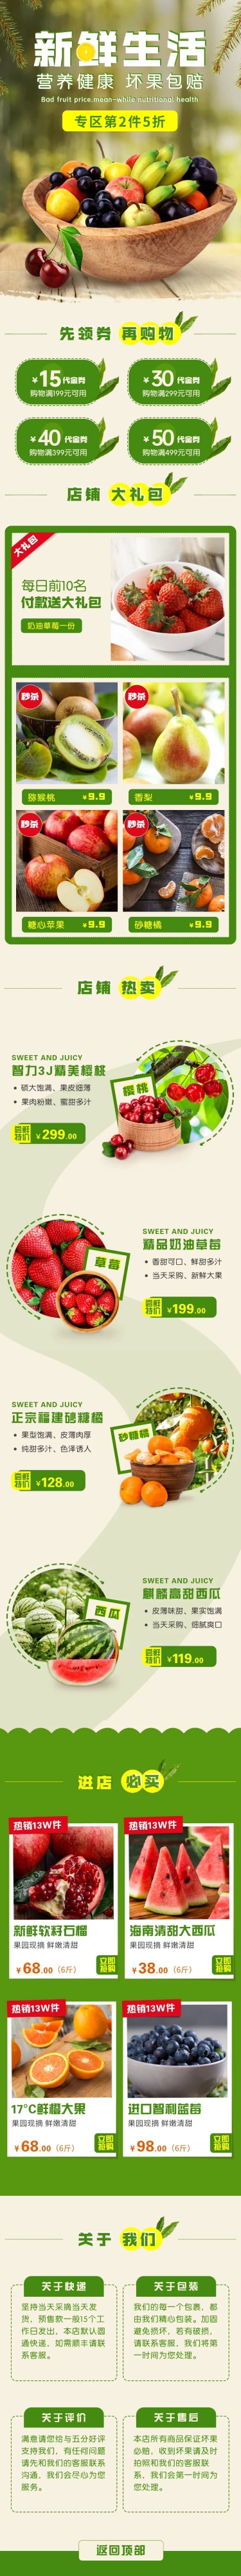 食品生鲜水果日常上新土特产店铺首页